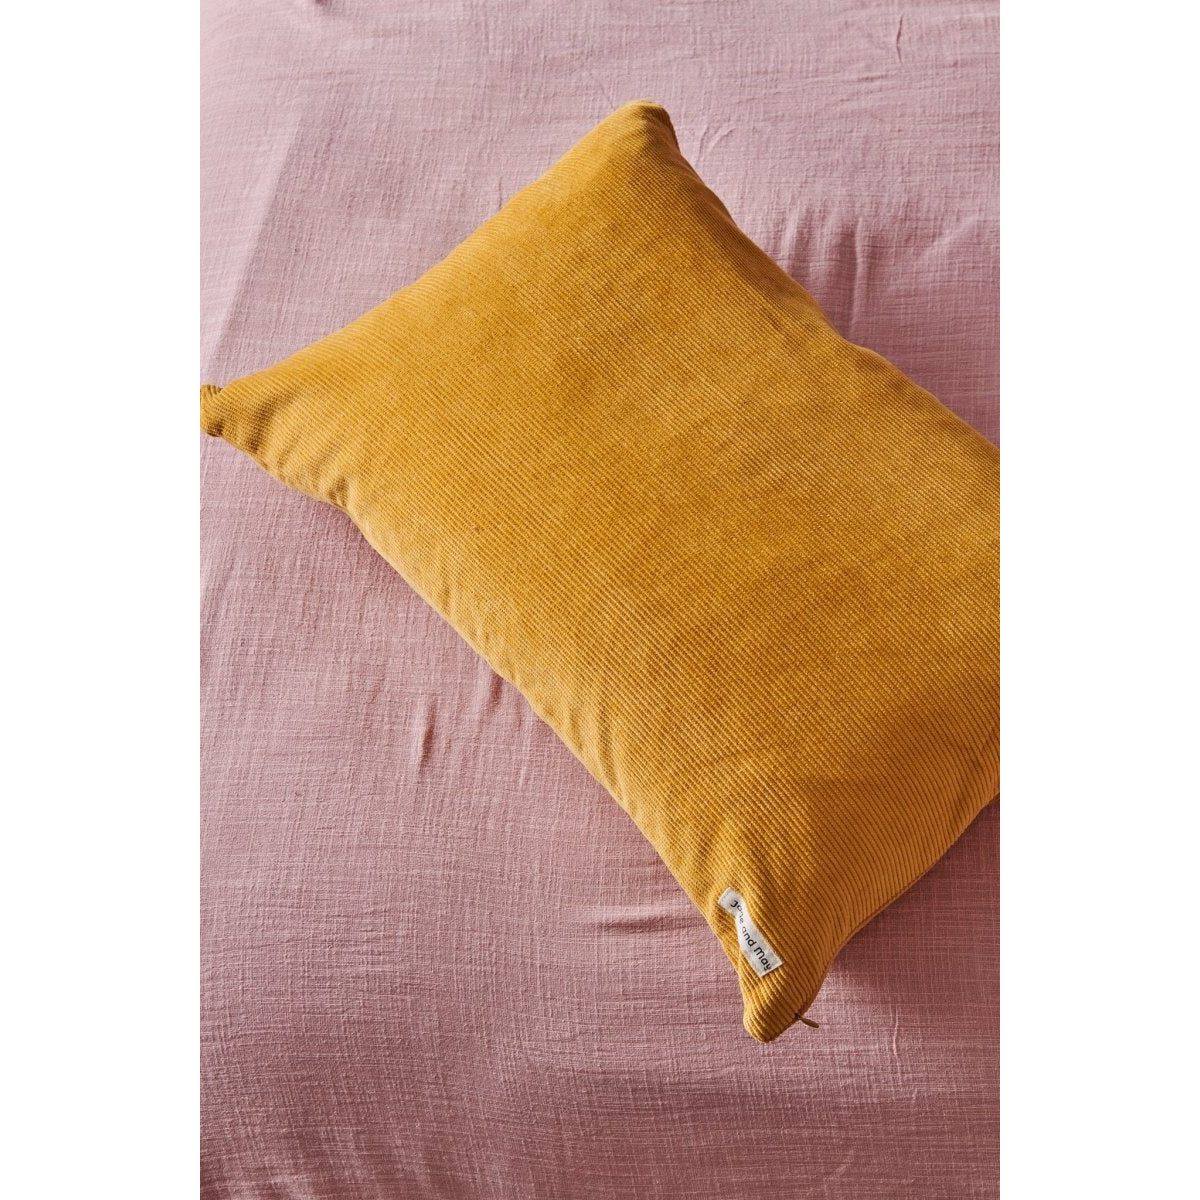 Colourful Cushion - Mustard Cord-Jade and May-Cushion Cover-Jade and May